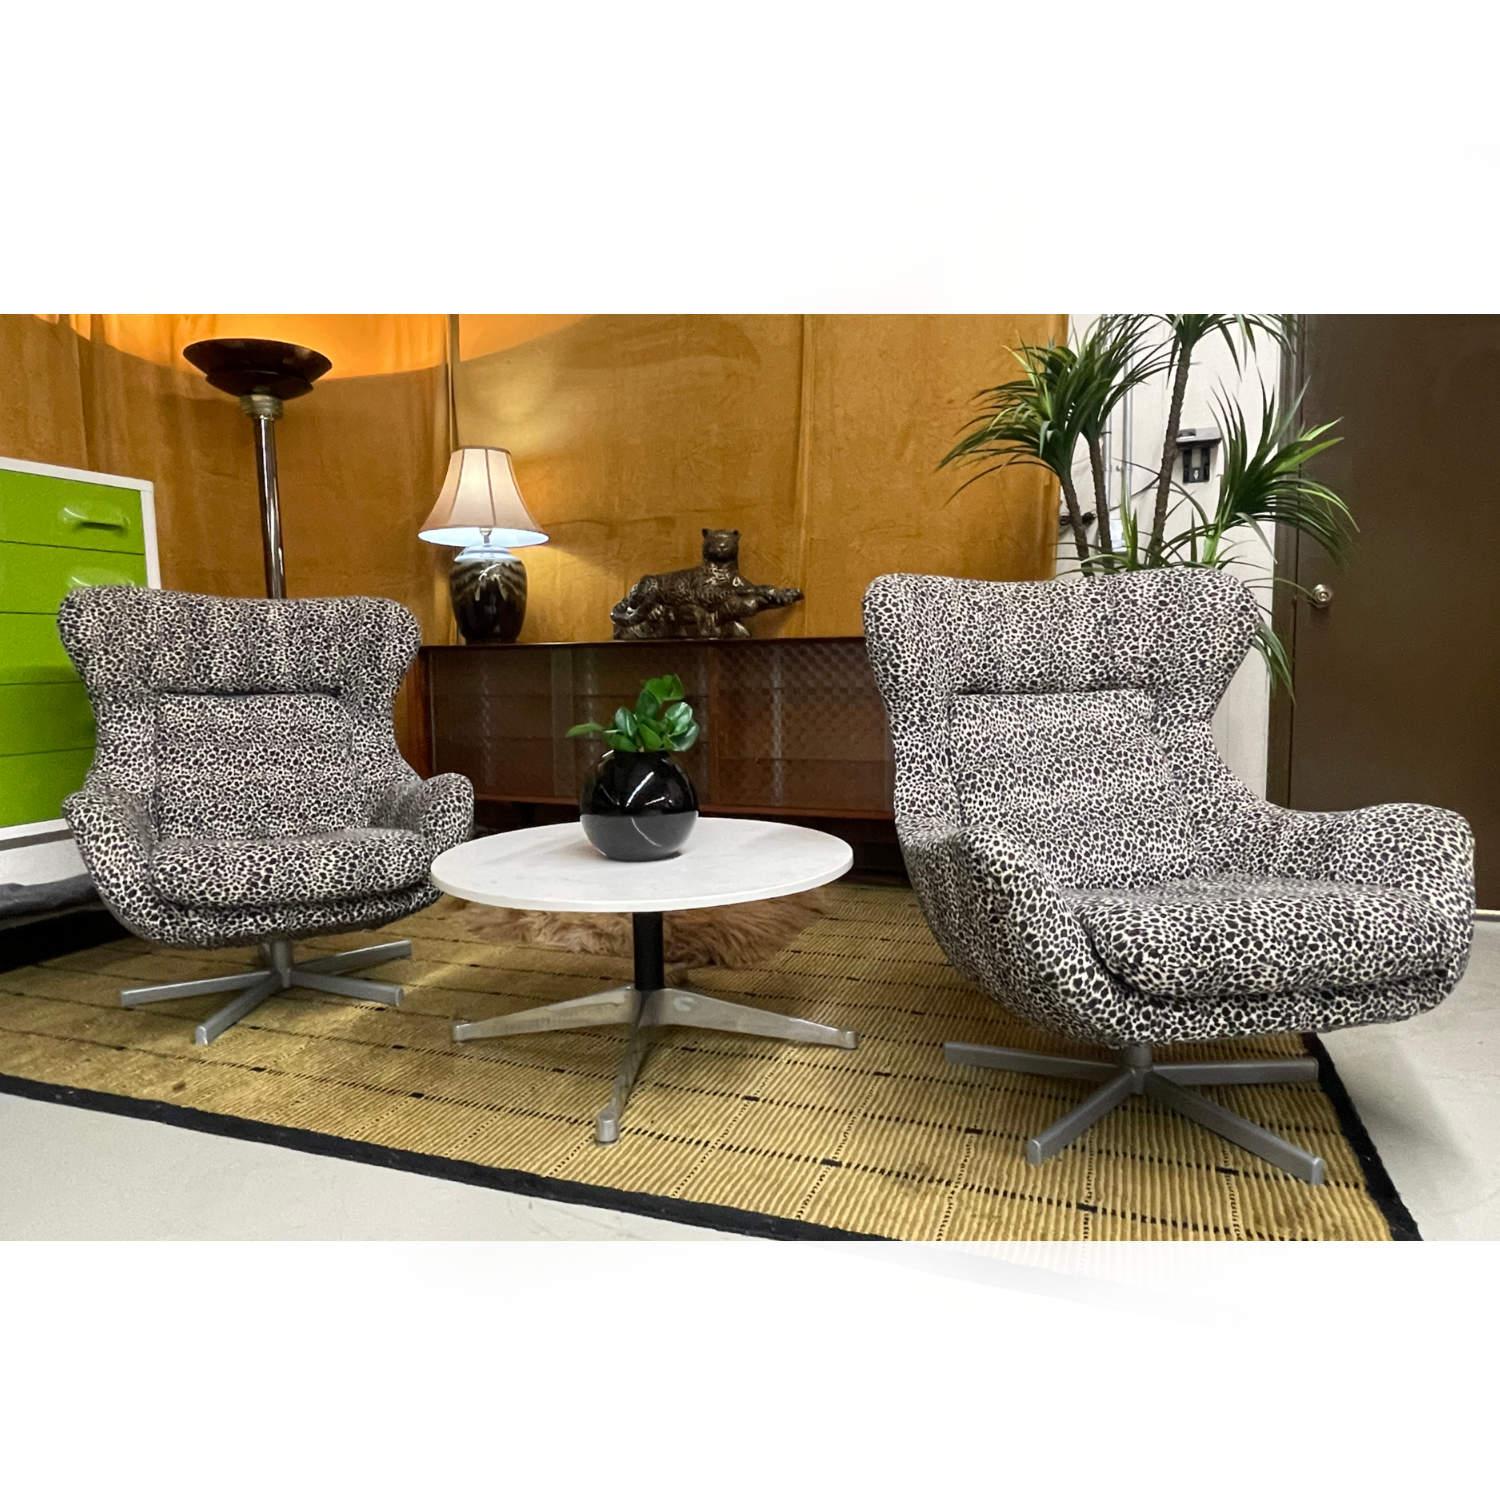 Ein Paar super sexy Lounge-Sessel aus plüschigem Wollmaterial mit Leopardenmuster. Kürzlich neu gepolstert mit Tonnen von Leben auf dem Stoff. Der ultramoderne Stuhl ist im Stil des ikonischen, weltweit anerkannten, zeitlosen Designs des Egg Chair